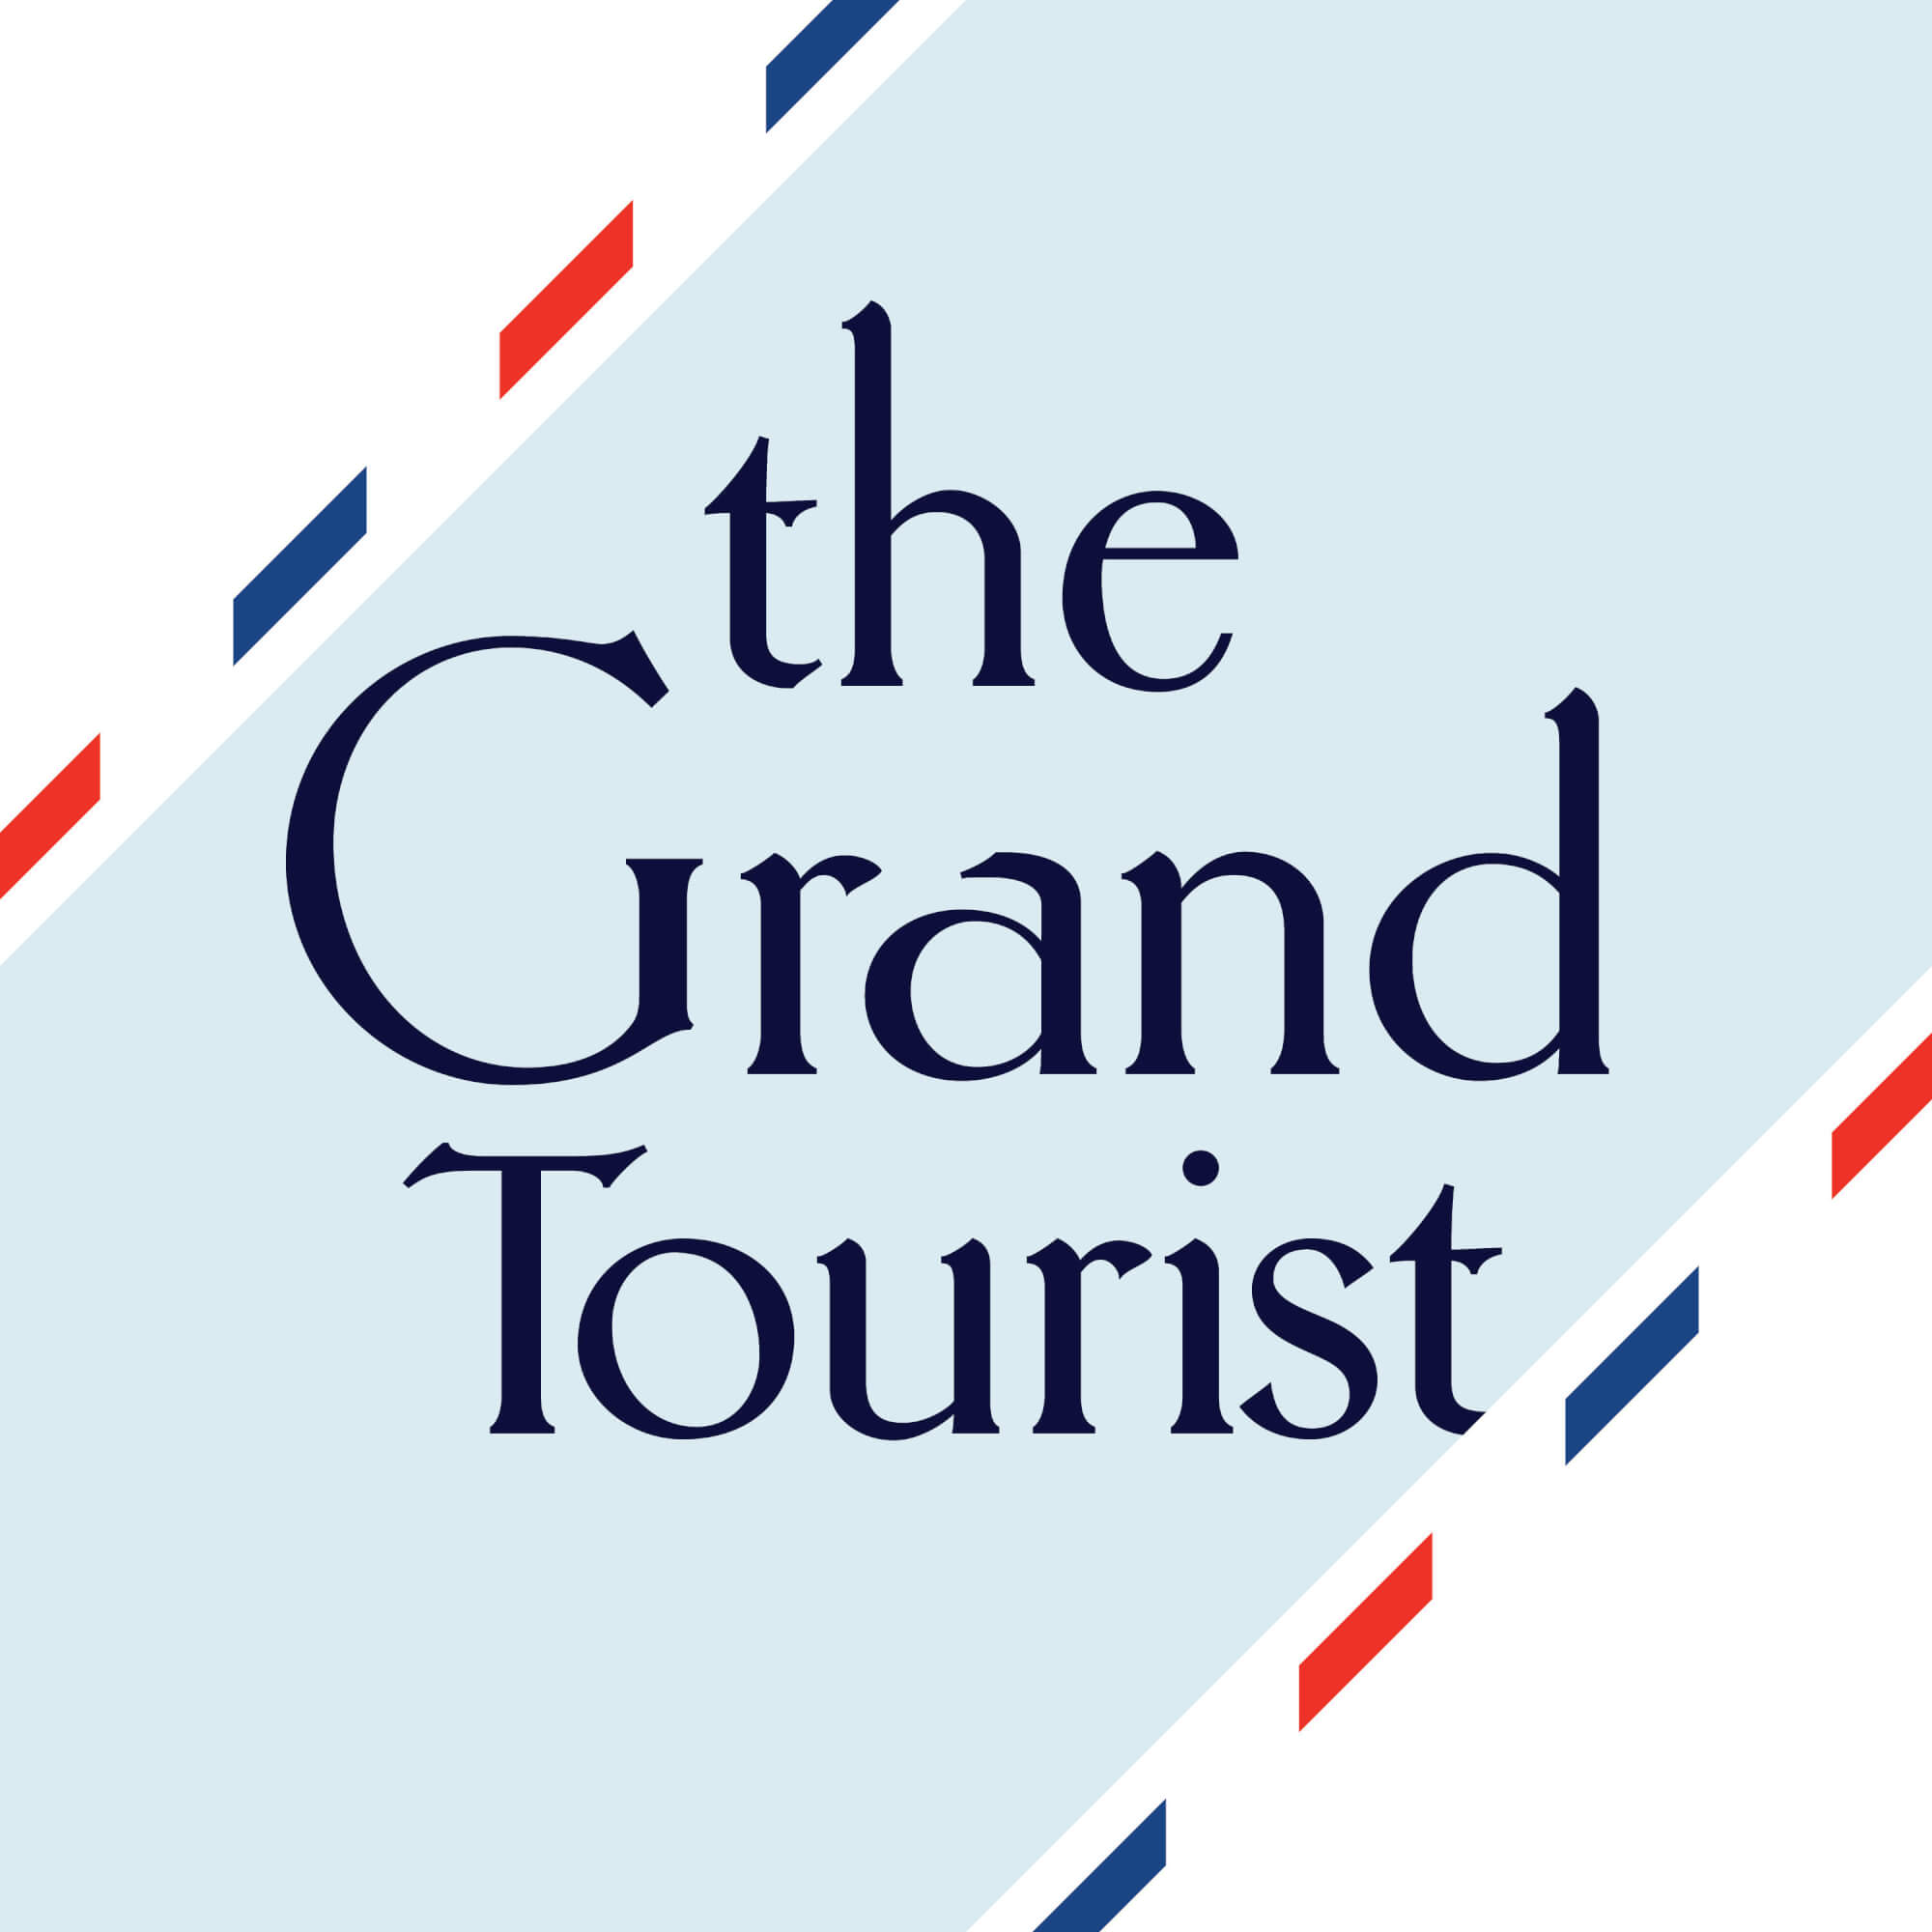 PHILIPPE STARCK RÉPOND AUX QUESTIONS DE THE GRAND TOURIST  - 